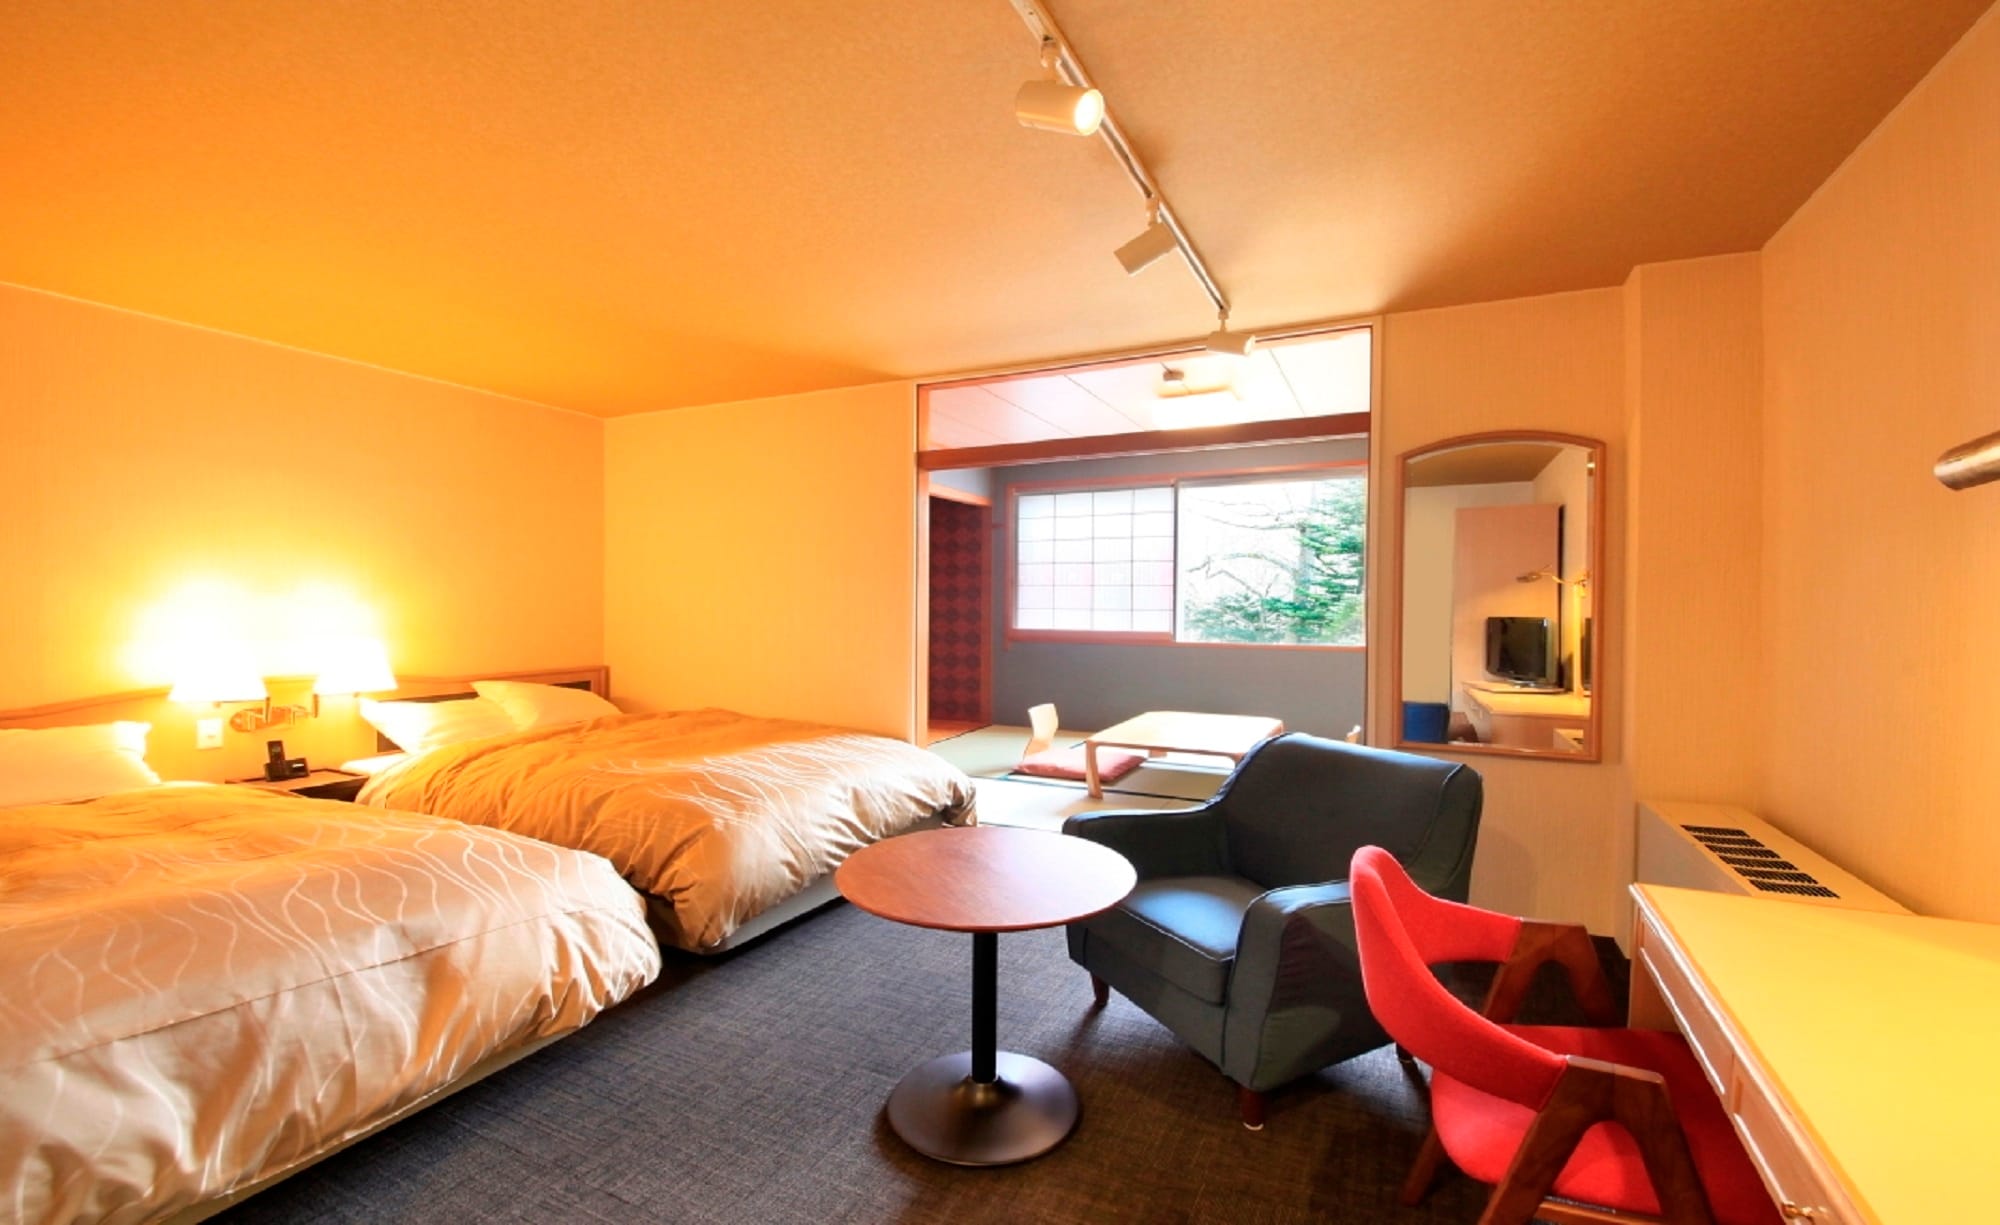 ■“日西式房間” 這是在輕井澤很少見的日式和西式房間。